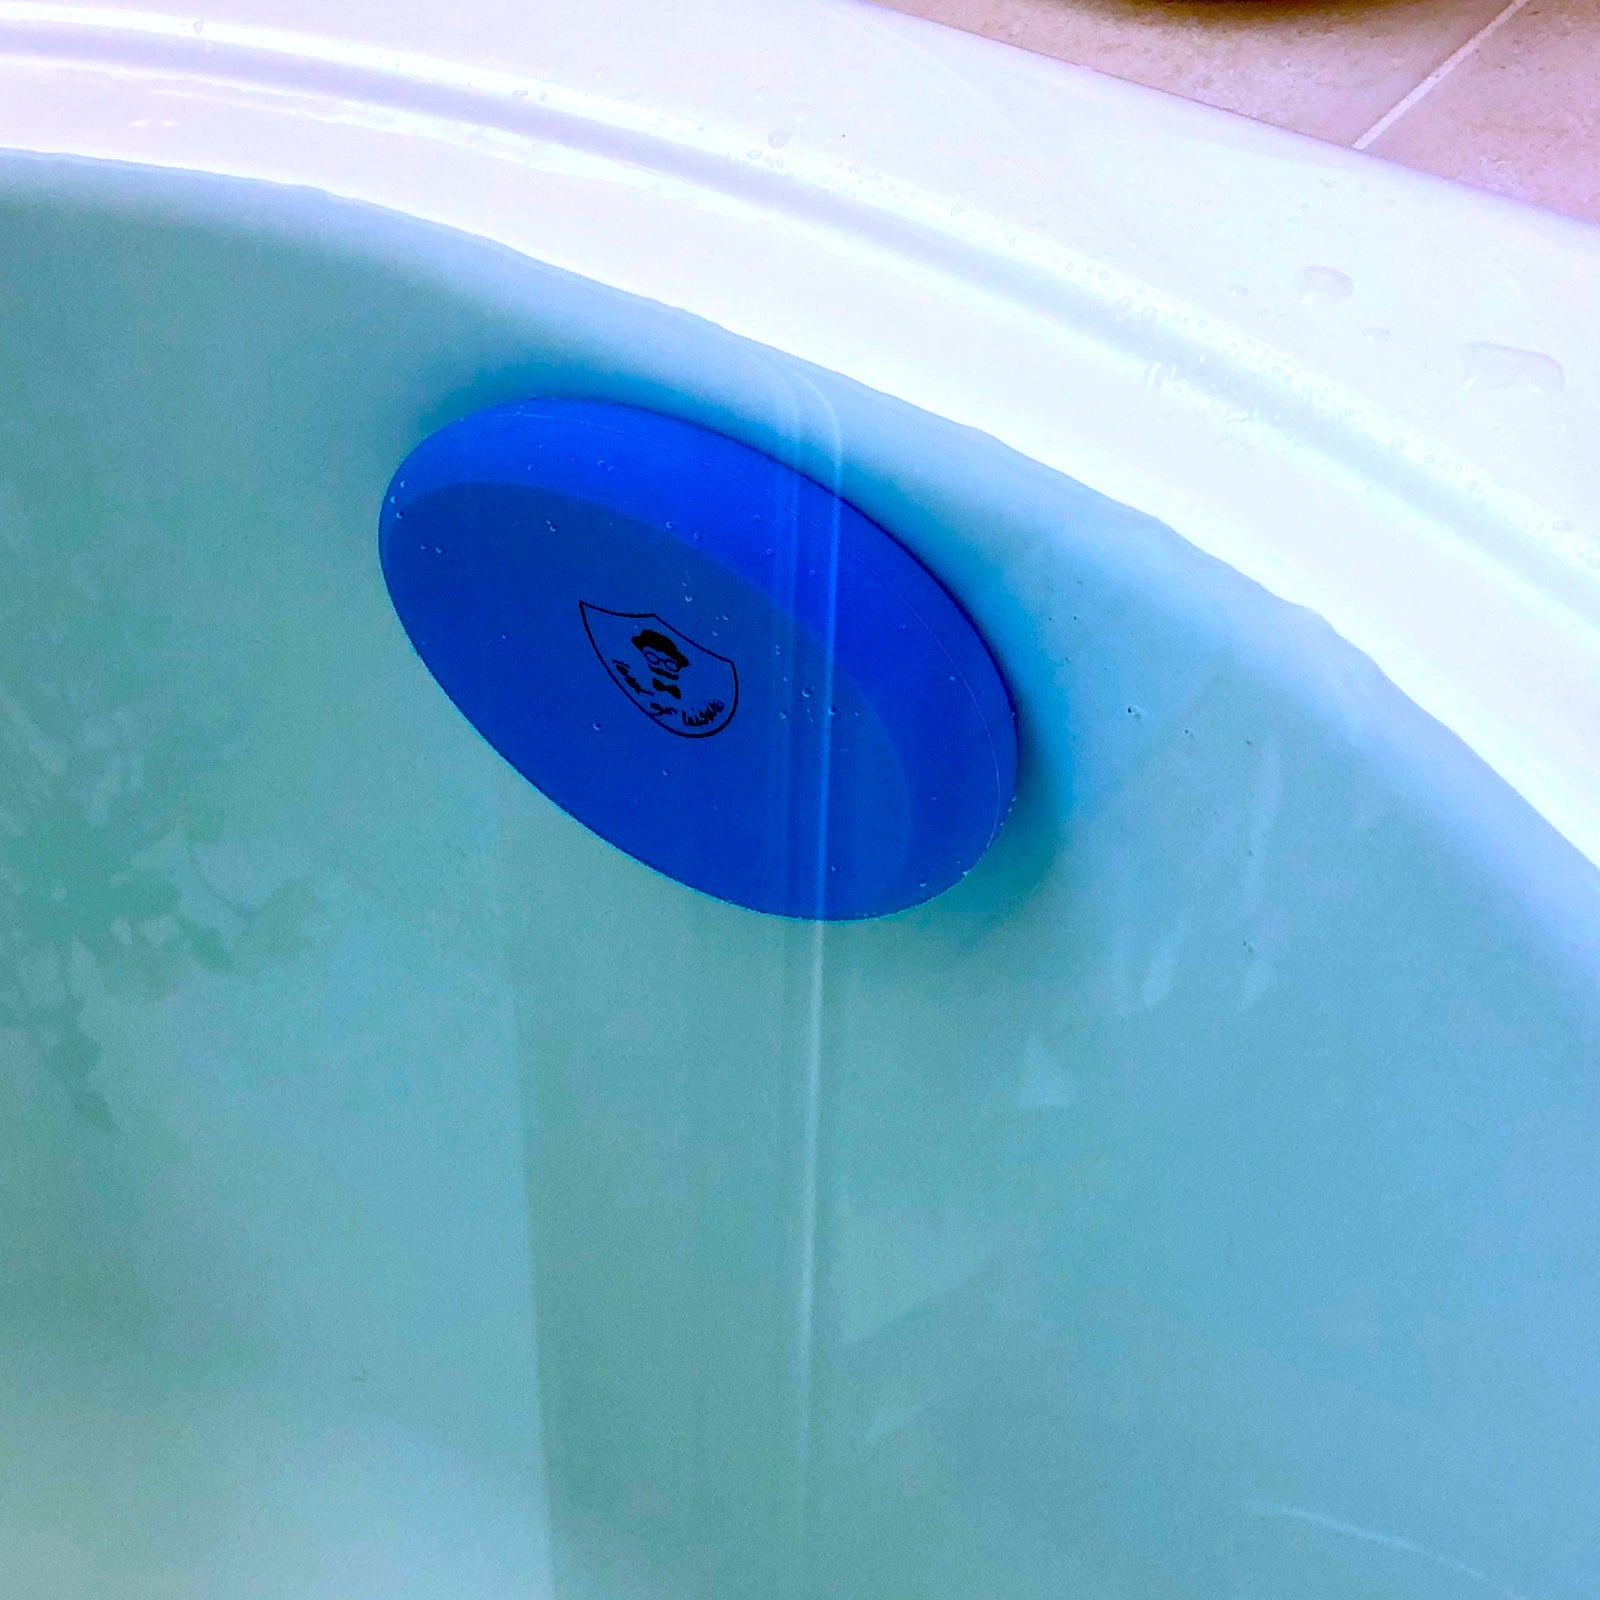 Bath Tub Overflow Drain Cover- Bathtub Drain Cover, Silicone